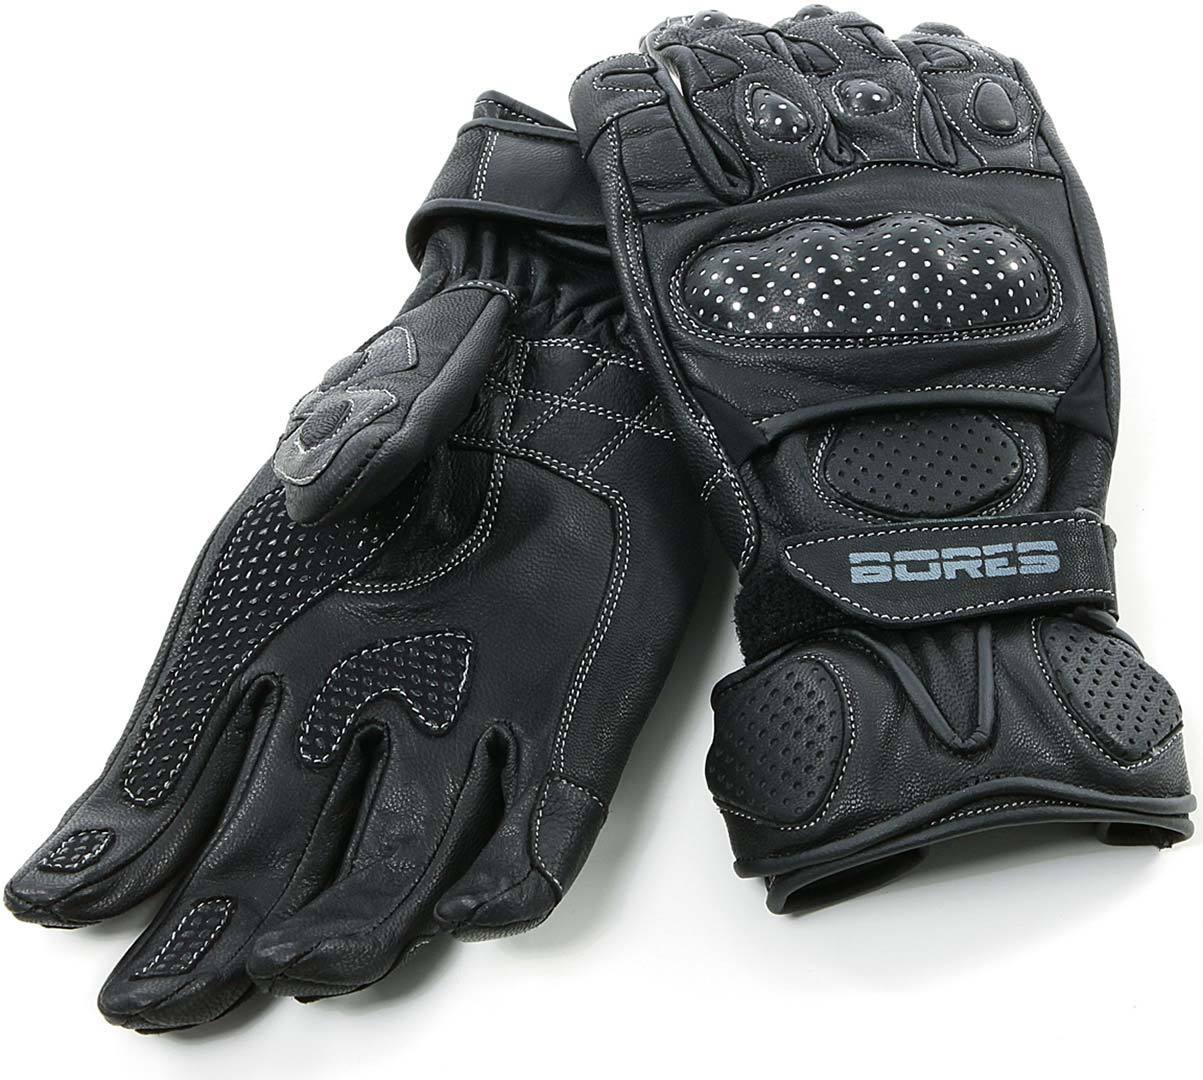 Bores Dark Black Gloves  - Black